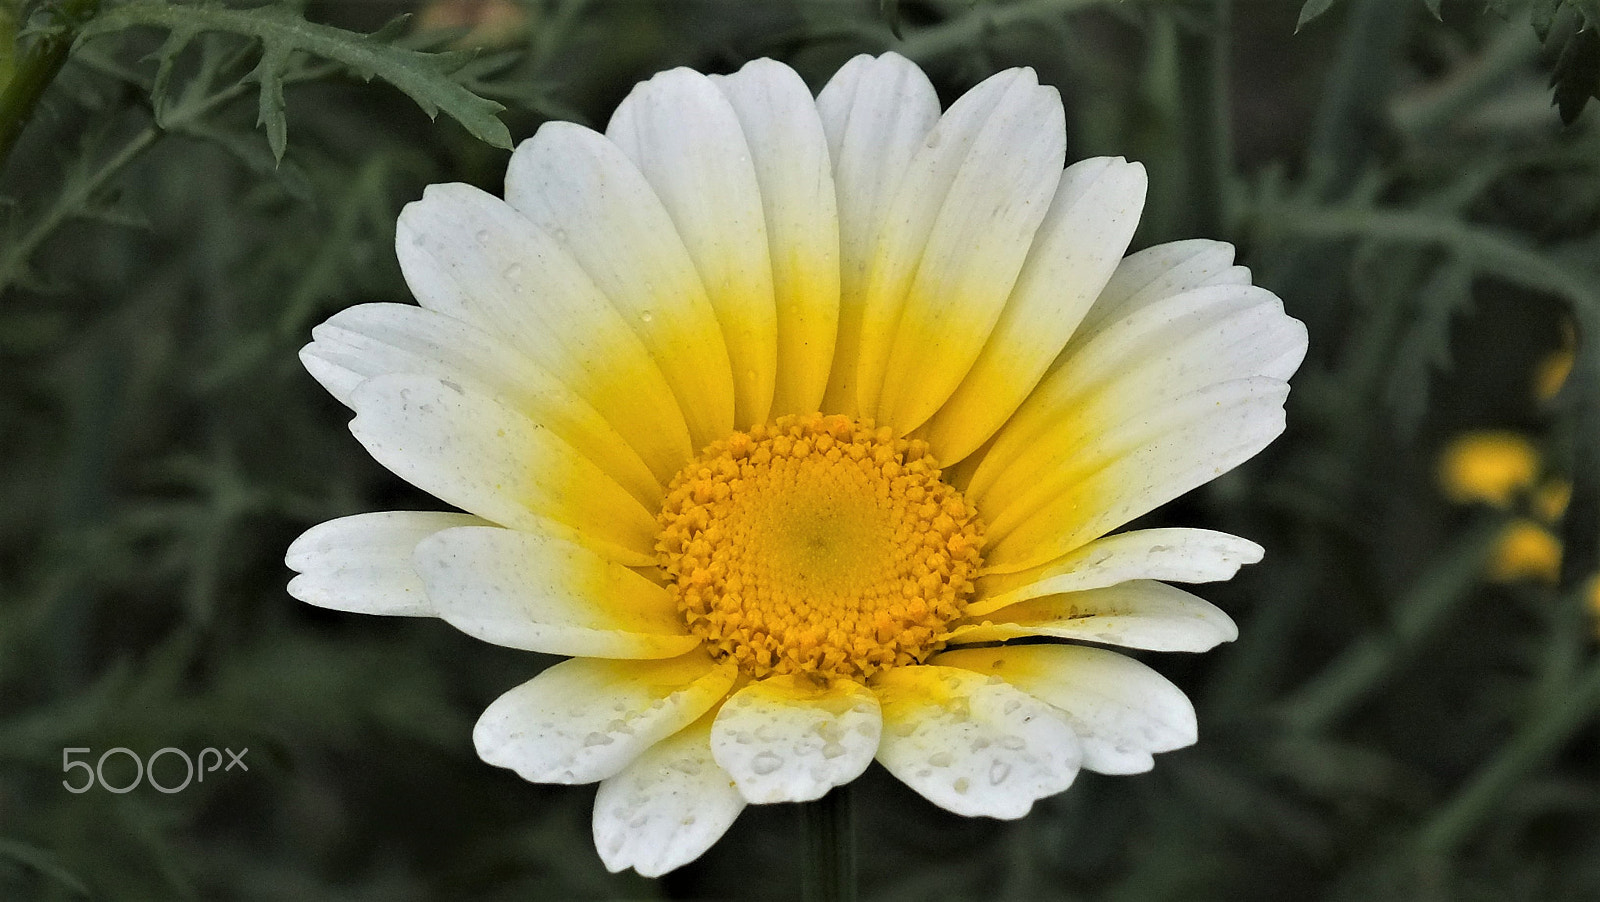 Fujifilm FinePix HS28EXR sample photo. Lovely daisy photography